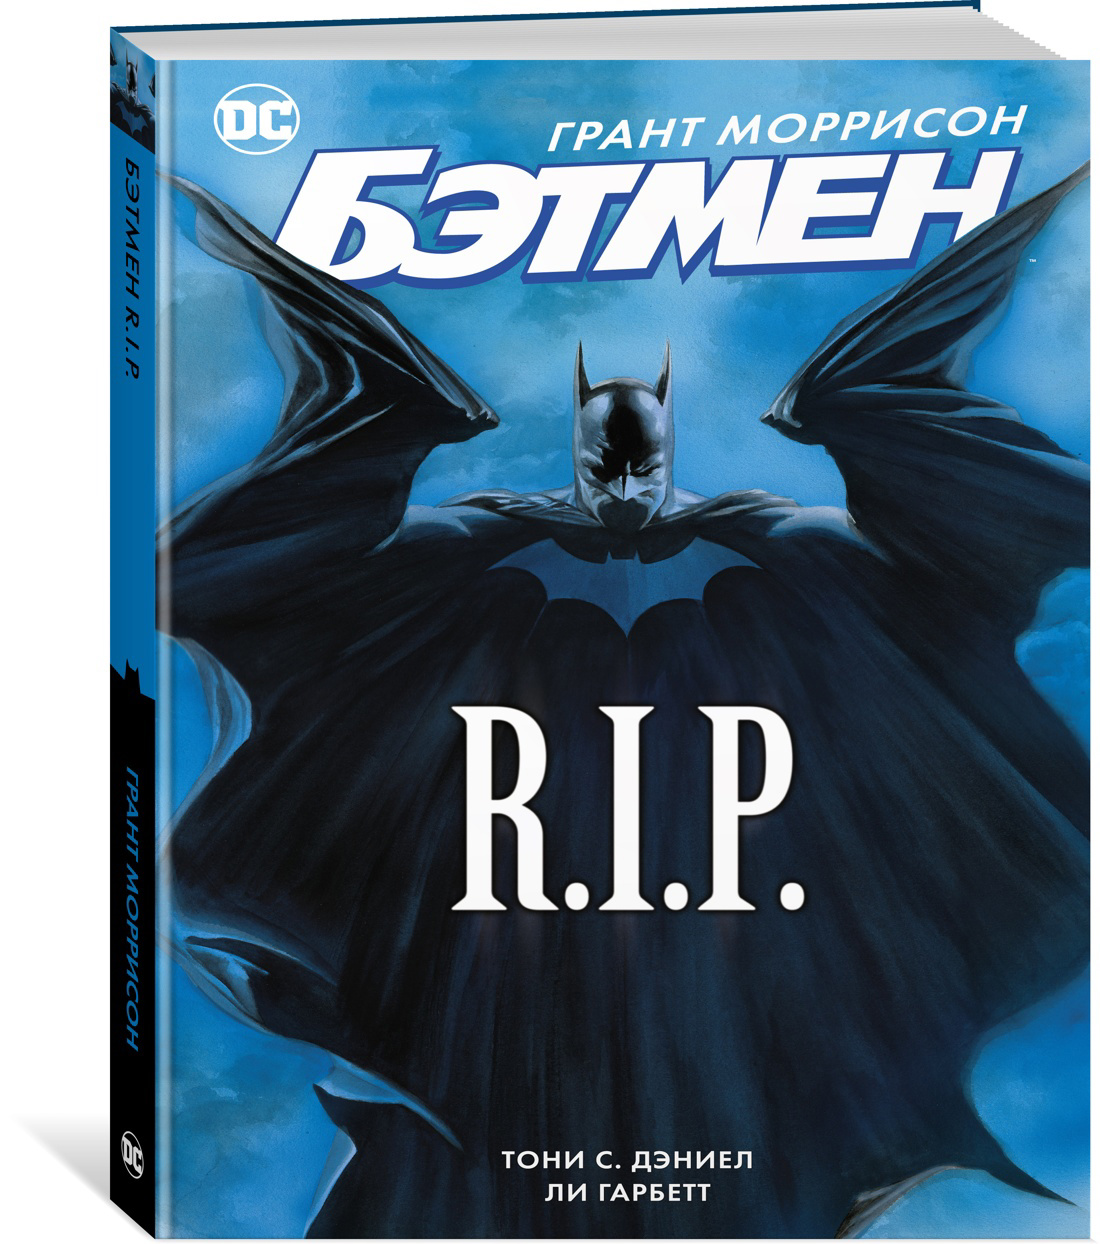 R batman. Грант Моррисон Бэтмен r.i.p. Книга Бэтмен. Бэтмен рип комикс. Книга про Бэтмена.